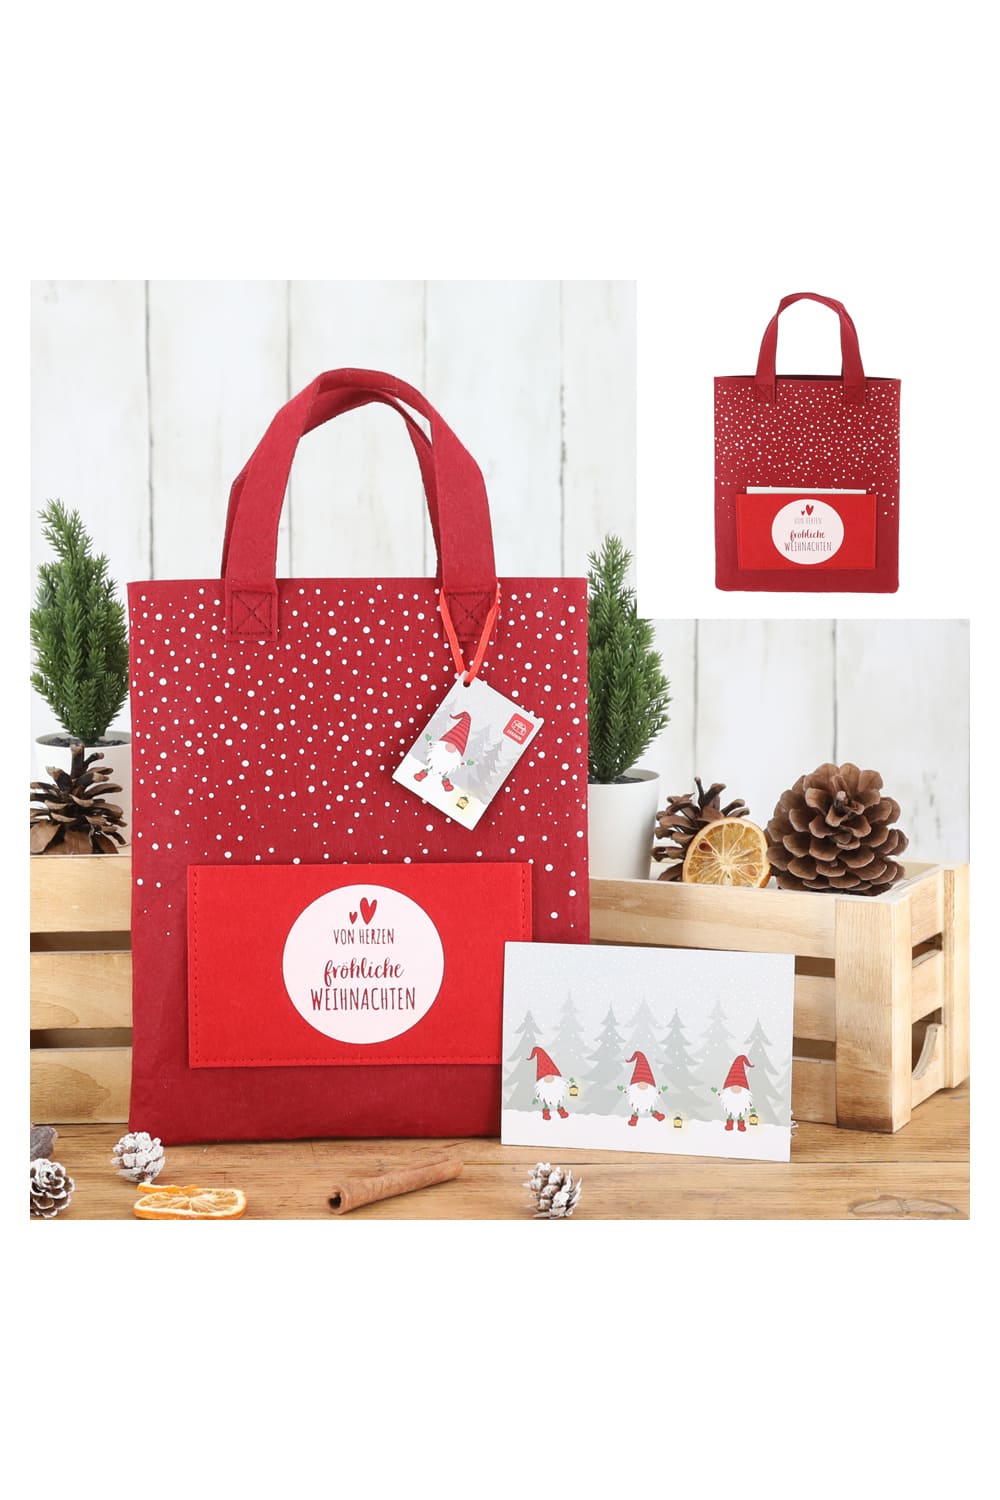 Diese rote Filztasche ist inklusive einer Postkarte fuer Weihnachtsgruesse. Auf der Tasche steht die Aufschrift: Von Herzen froehliche Weihnachten. Denn die weihnachtliche Tasche hat Platz fuer ein kleineres Geschenk und zusaetzlich kann die Tasche mit einem Geldgeschenk oder einem Gutscheingeschenk ergaenzt werden.